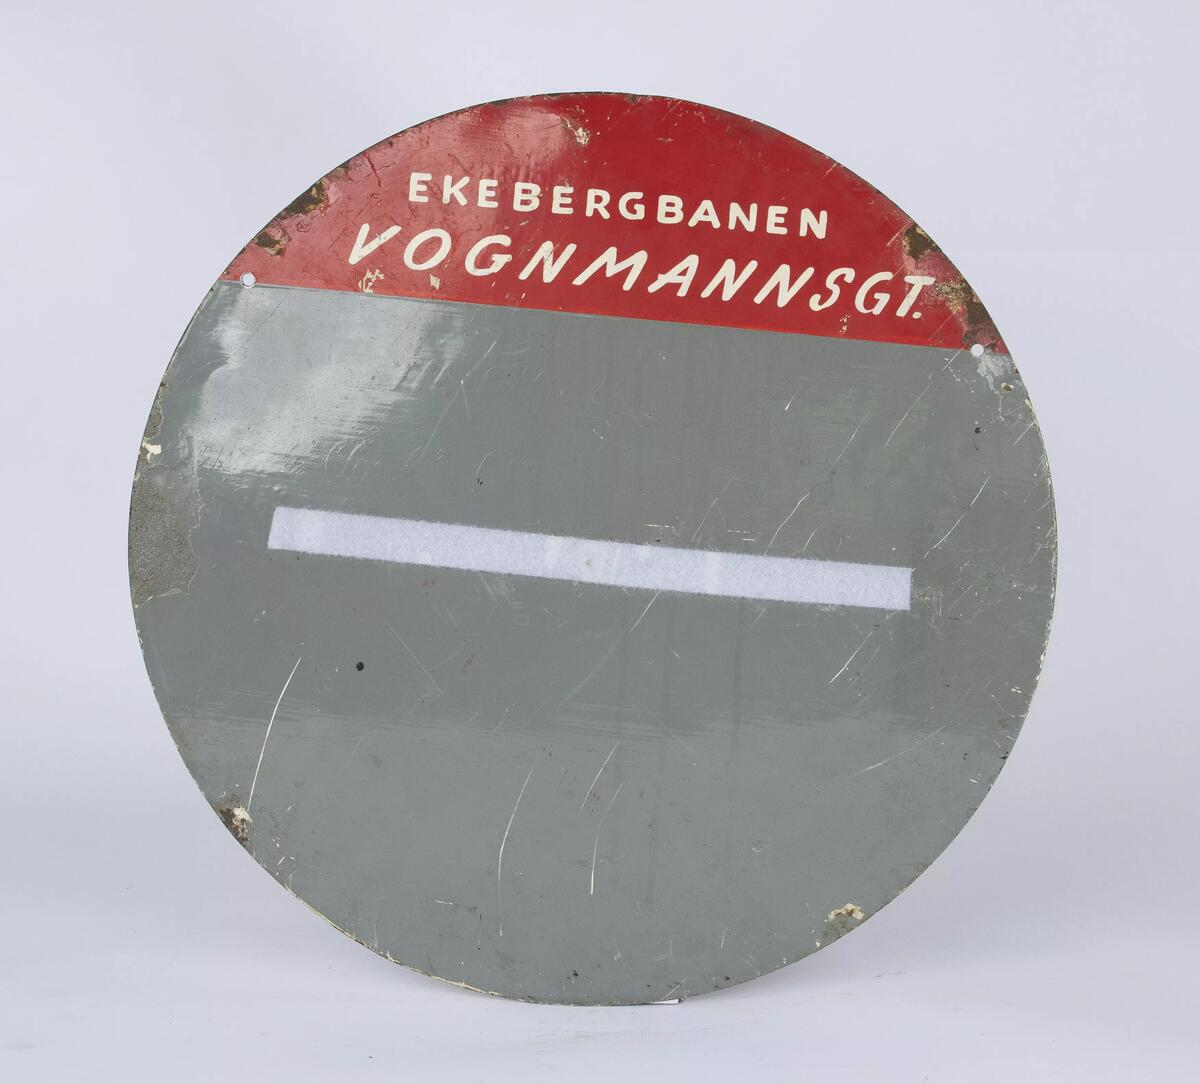 Rundt linjeskilt for Ekebergbanen plassert i vognmannsgata og viser tider for linje til Ljabru. Skiltet er av stål og er malt i en kremhvit og rød farge.